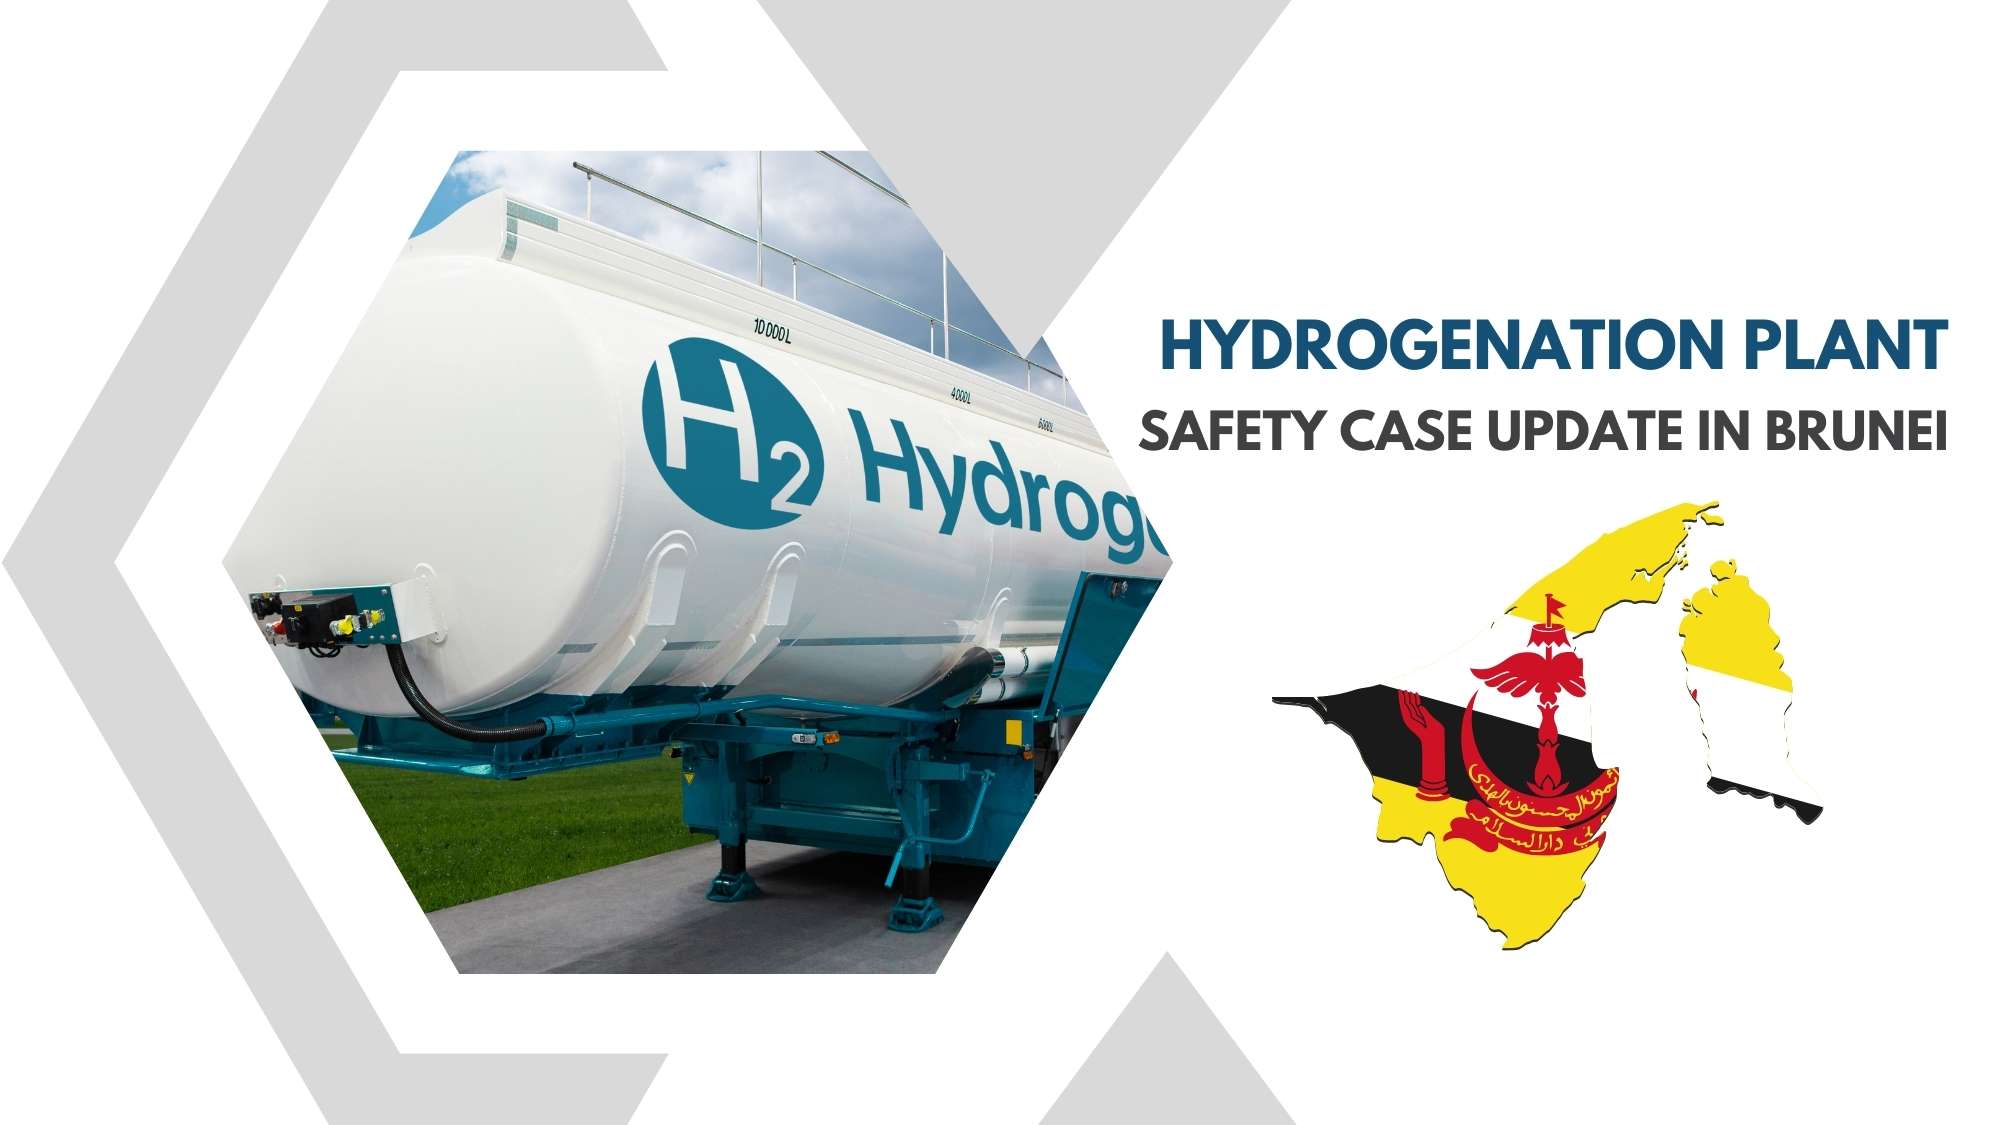 Hydrogenation Plant Safety Case Update in Brunei